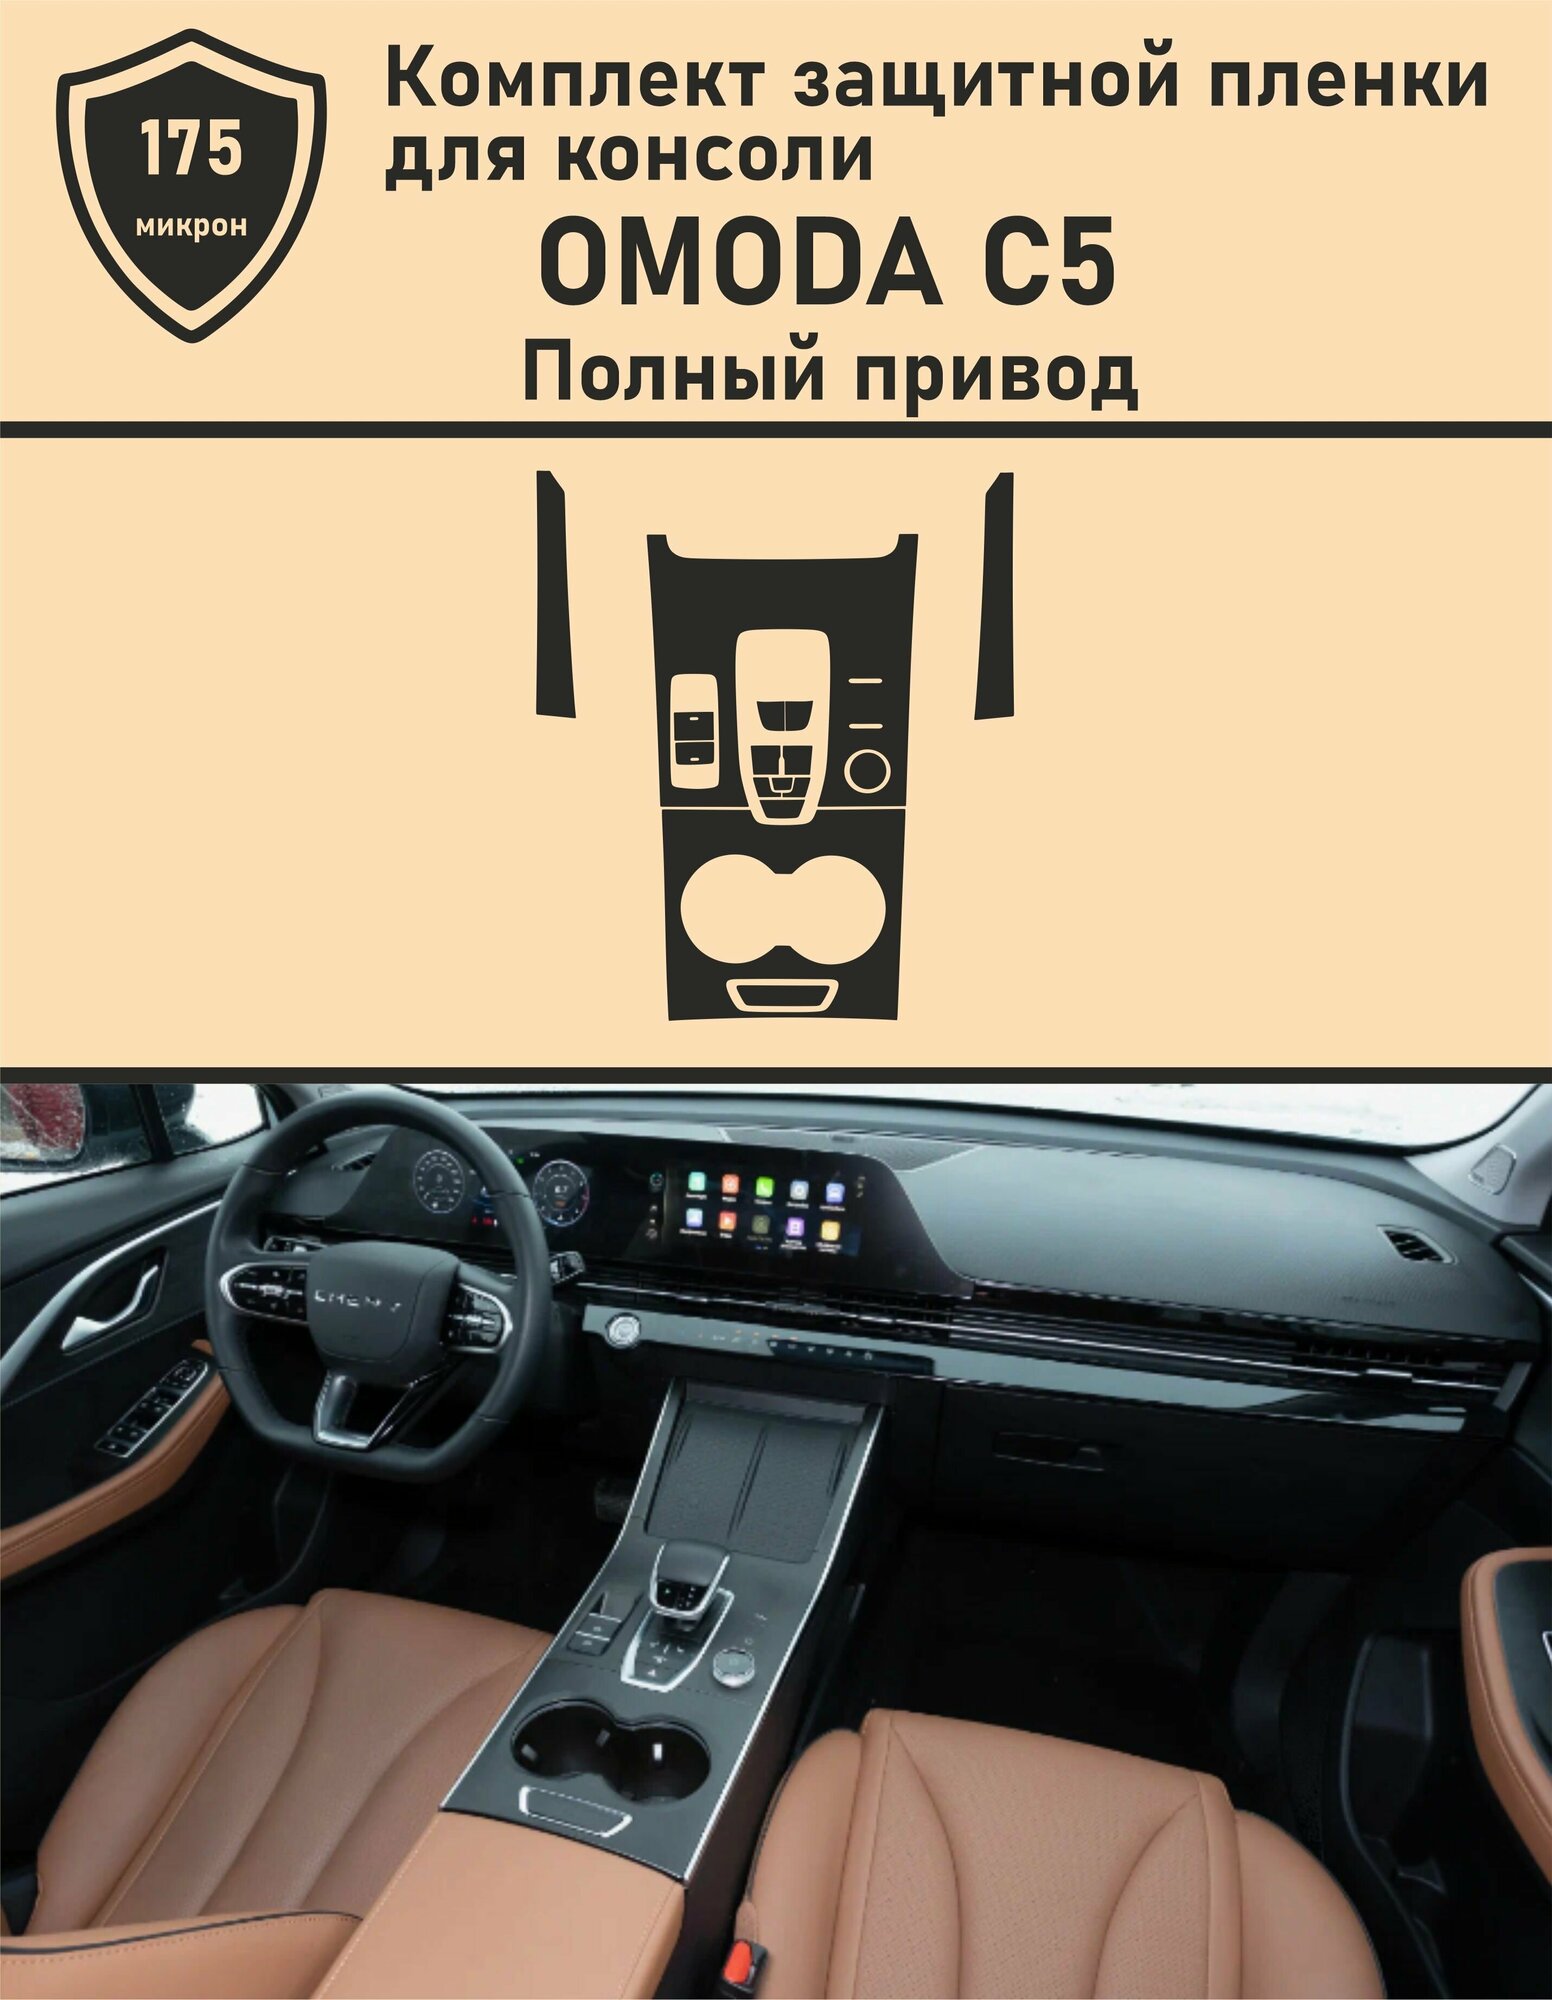 OMODA C5 Полный привод / Омода с5 / Защитная пленка для консоли